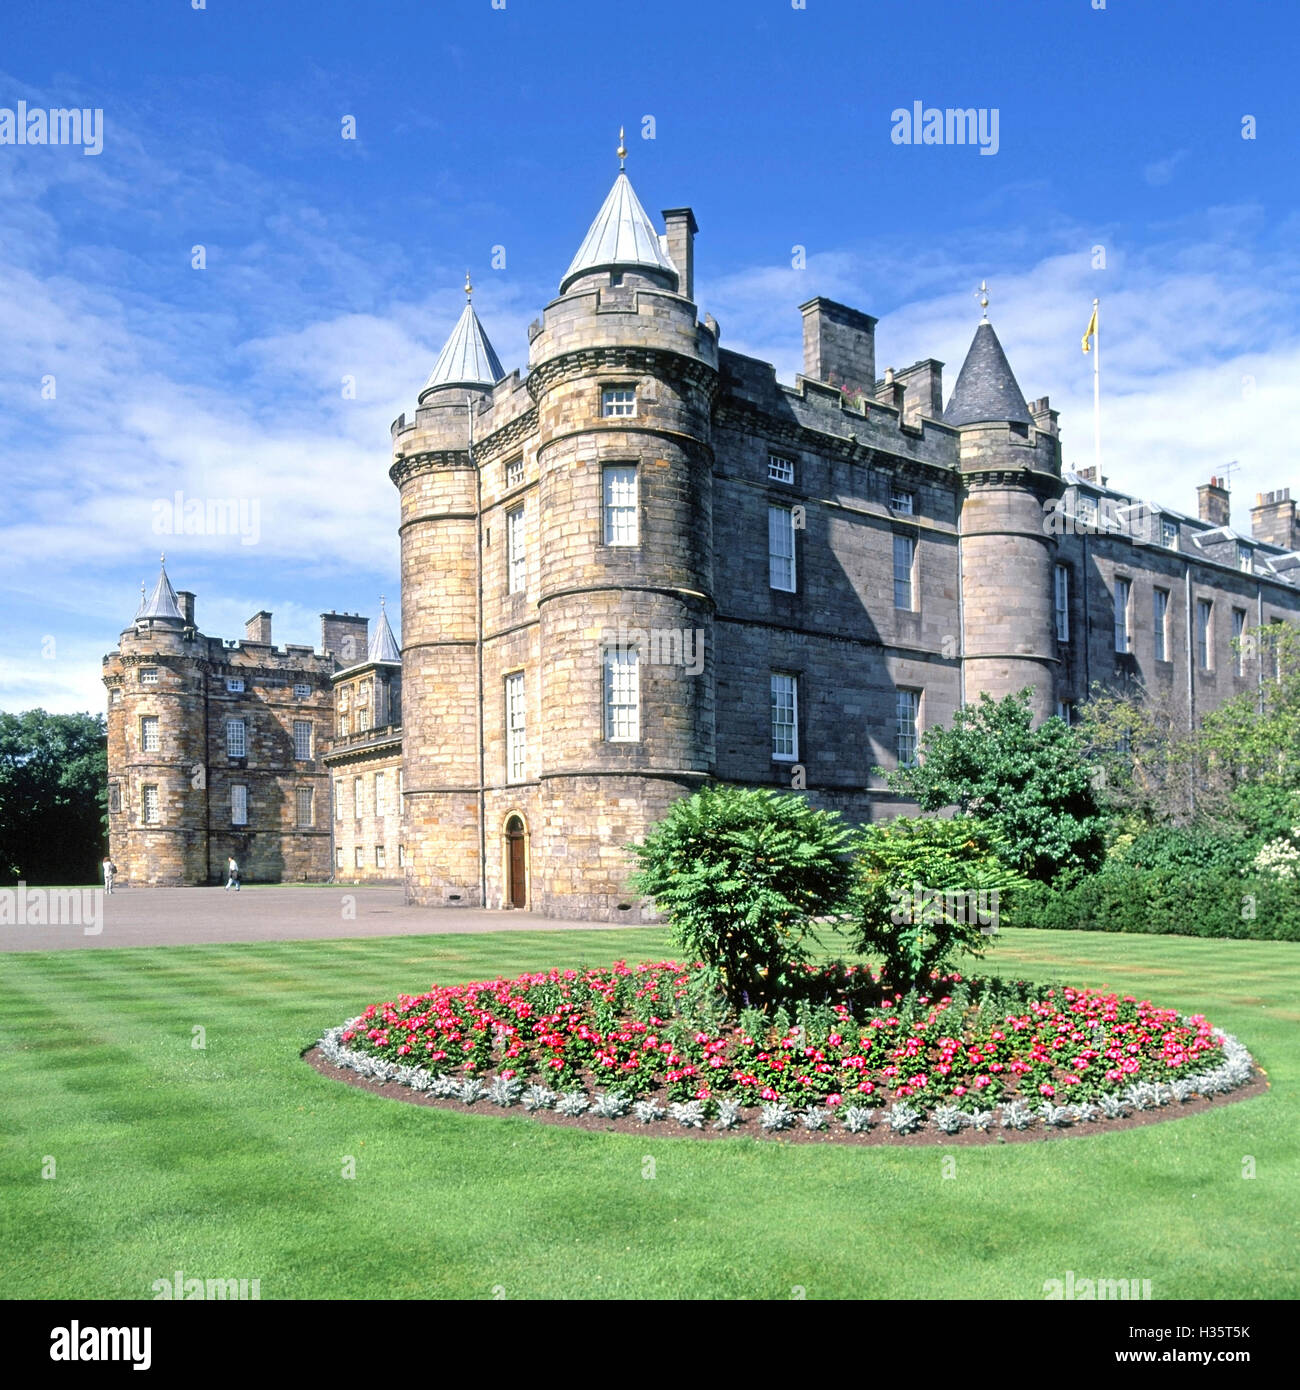 Blumen und Rasen Streifen an der Vorderseite des schottischen Holyrood Palace in Edinburgh UK offizielle Residenz des britischen Monarchen in Schottland Stockfoto